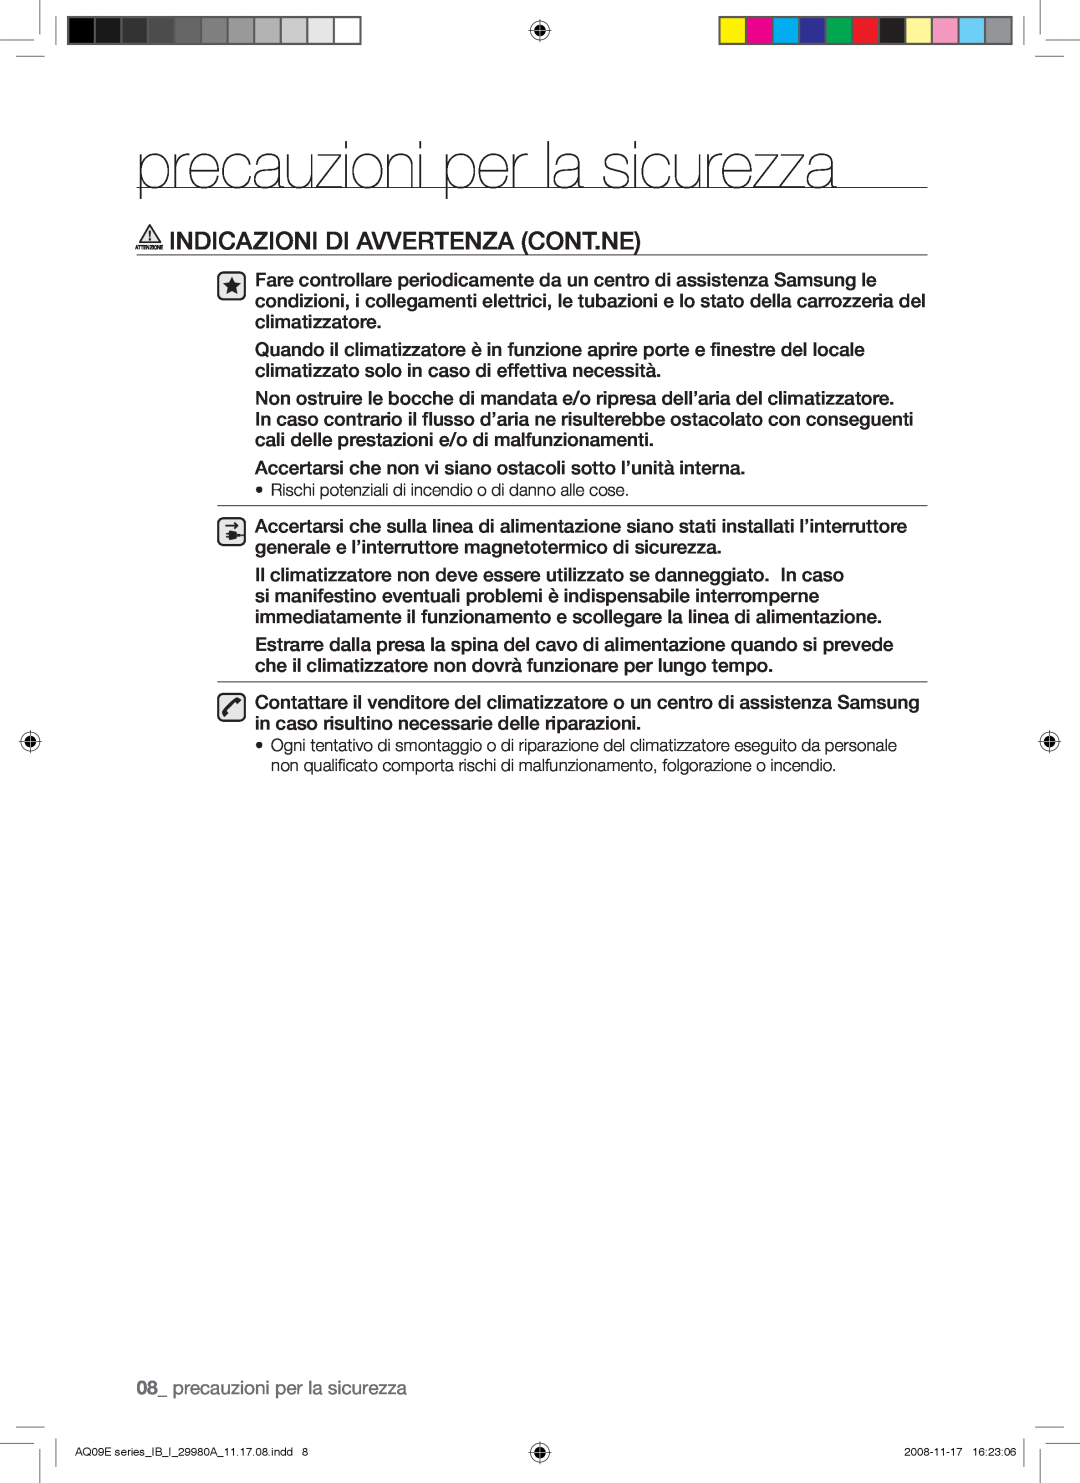 Samsung AQV12EWAN, AQV12EWAX, AQV09EWAX manual Attenzione Indicazioni Di Avvertenza Cont.Ne, precauzioni per la sicurezza 